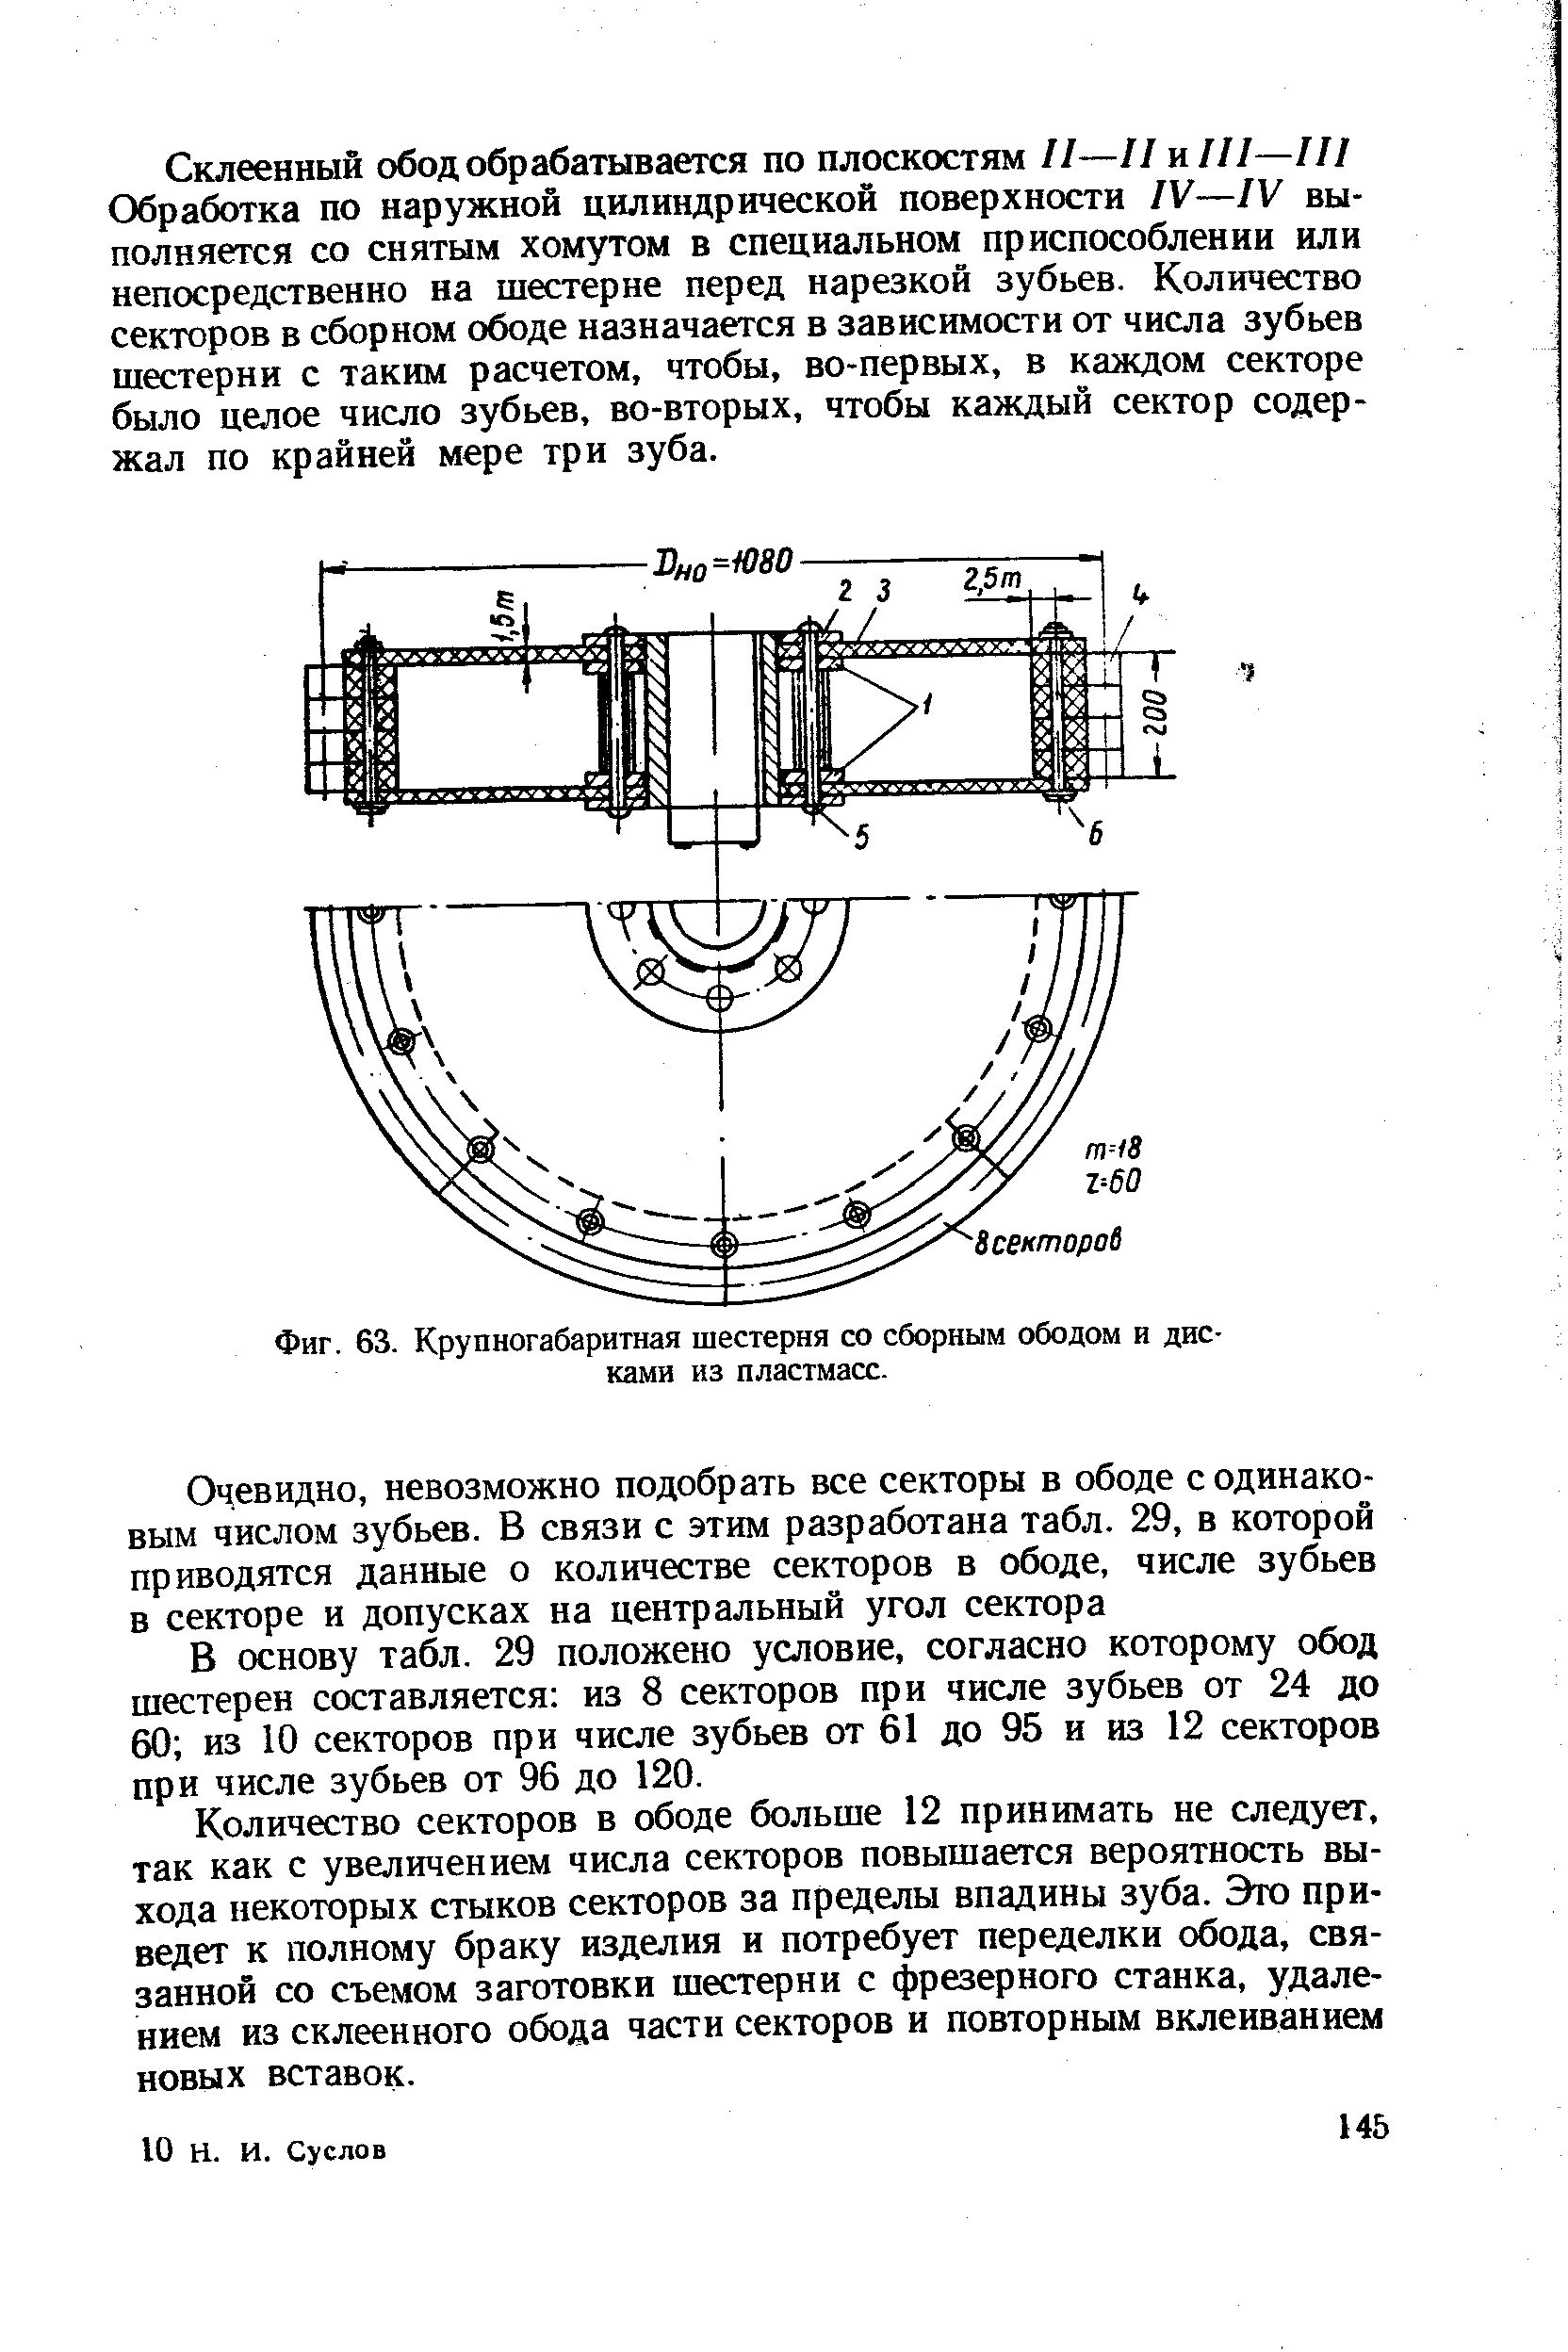 Фиг. 63. Крупногабаритная шестерня со сборным ободом и дисками из пластмасс.
